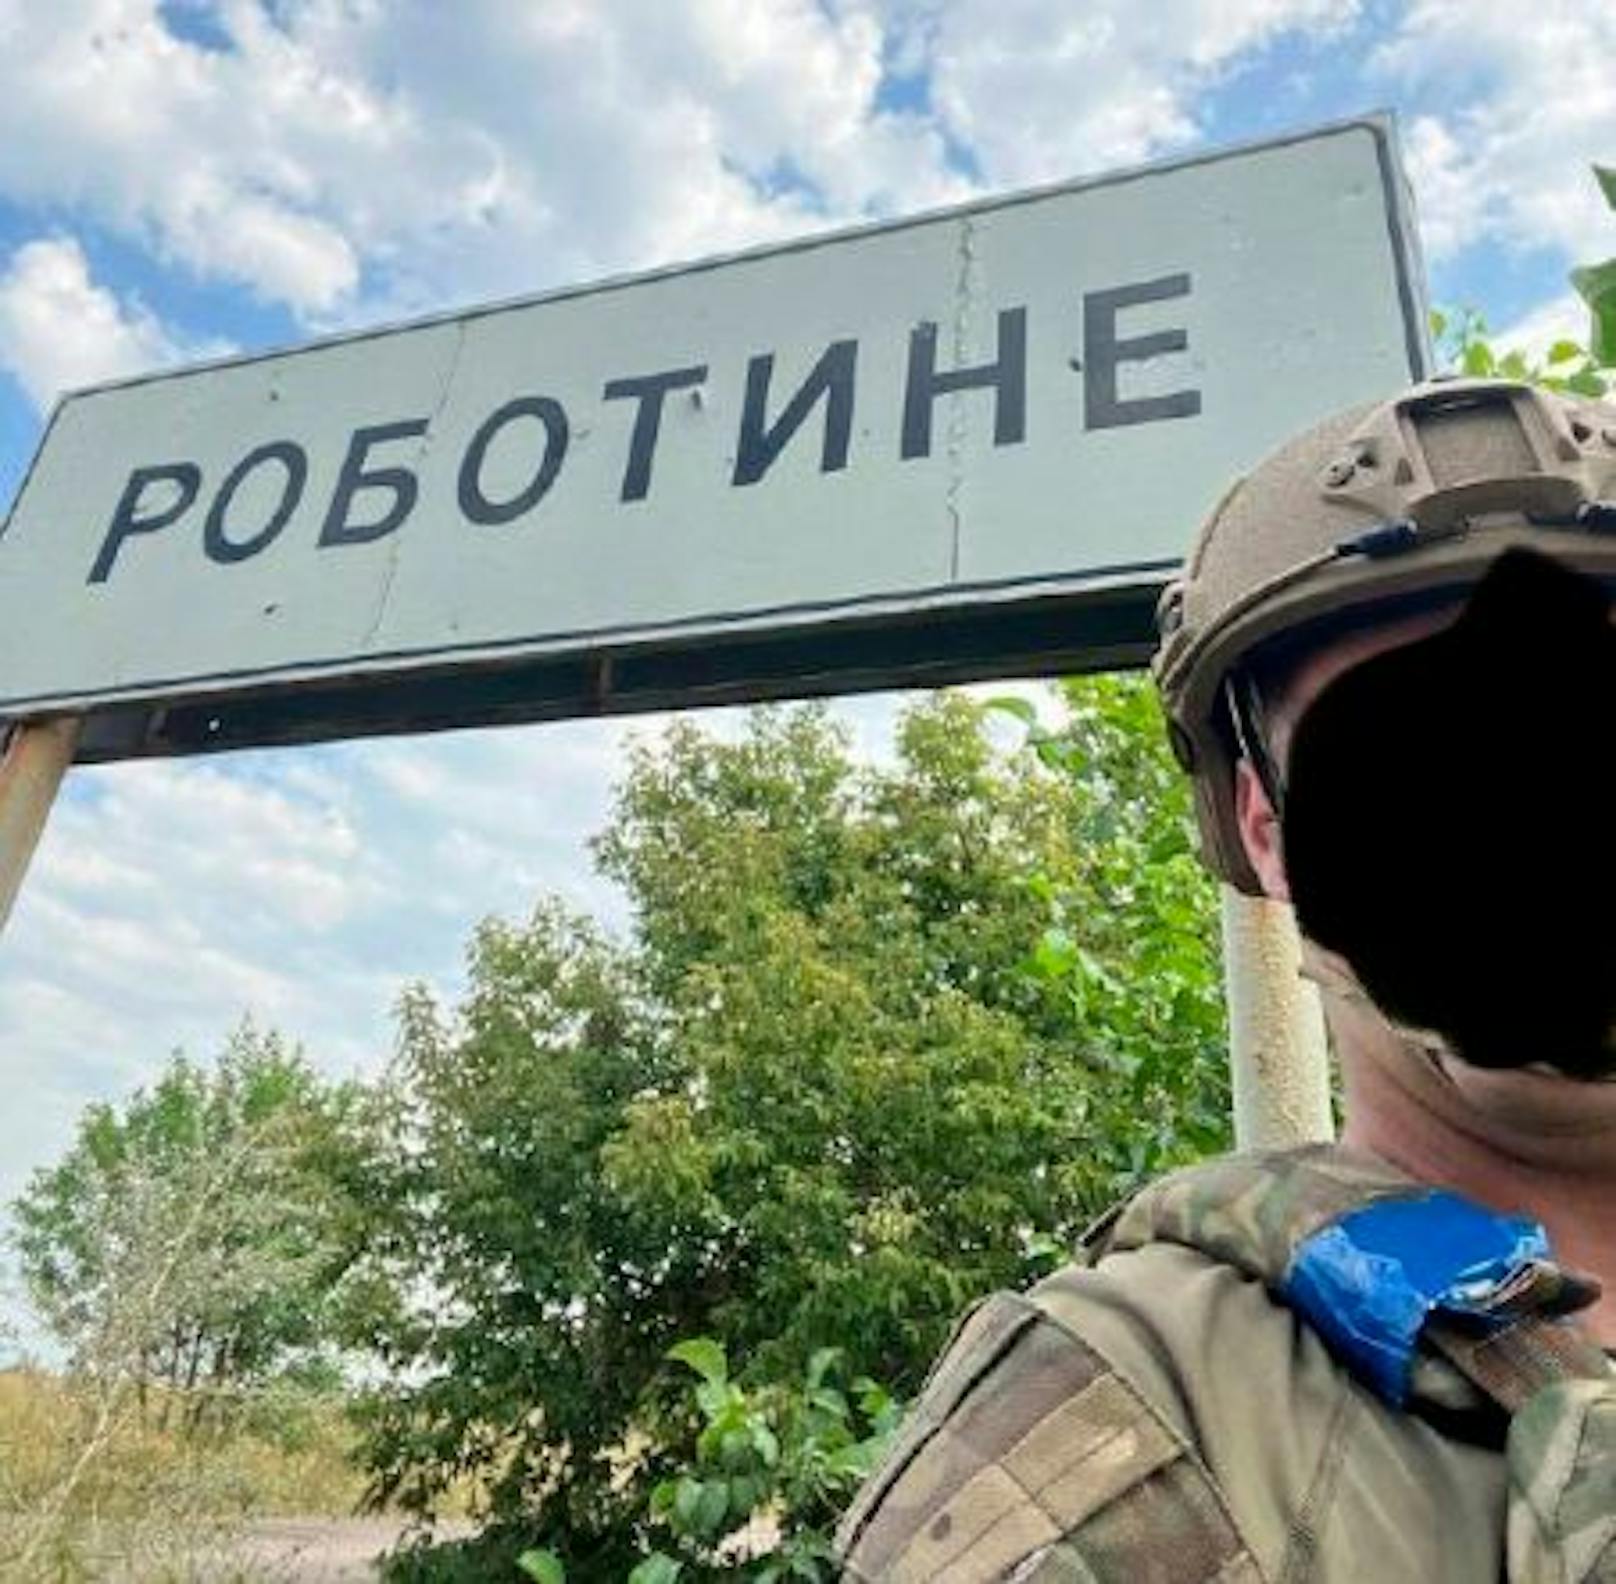 Ukrainischer Armee gelingt "signifikanter" Frontvorstoß